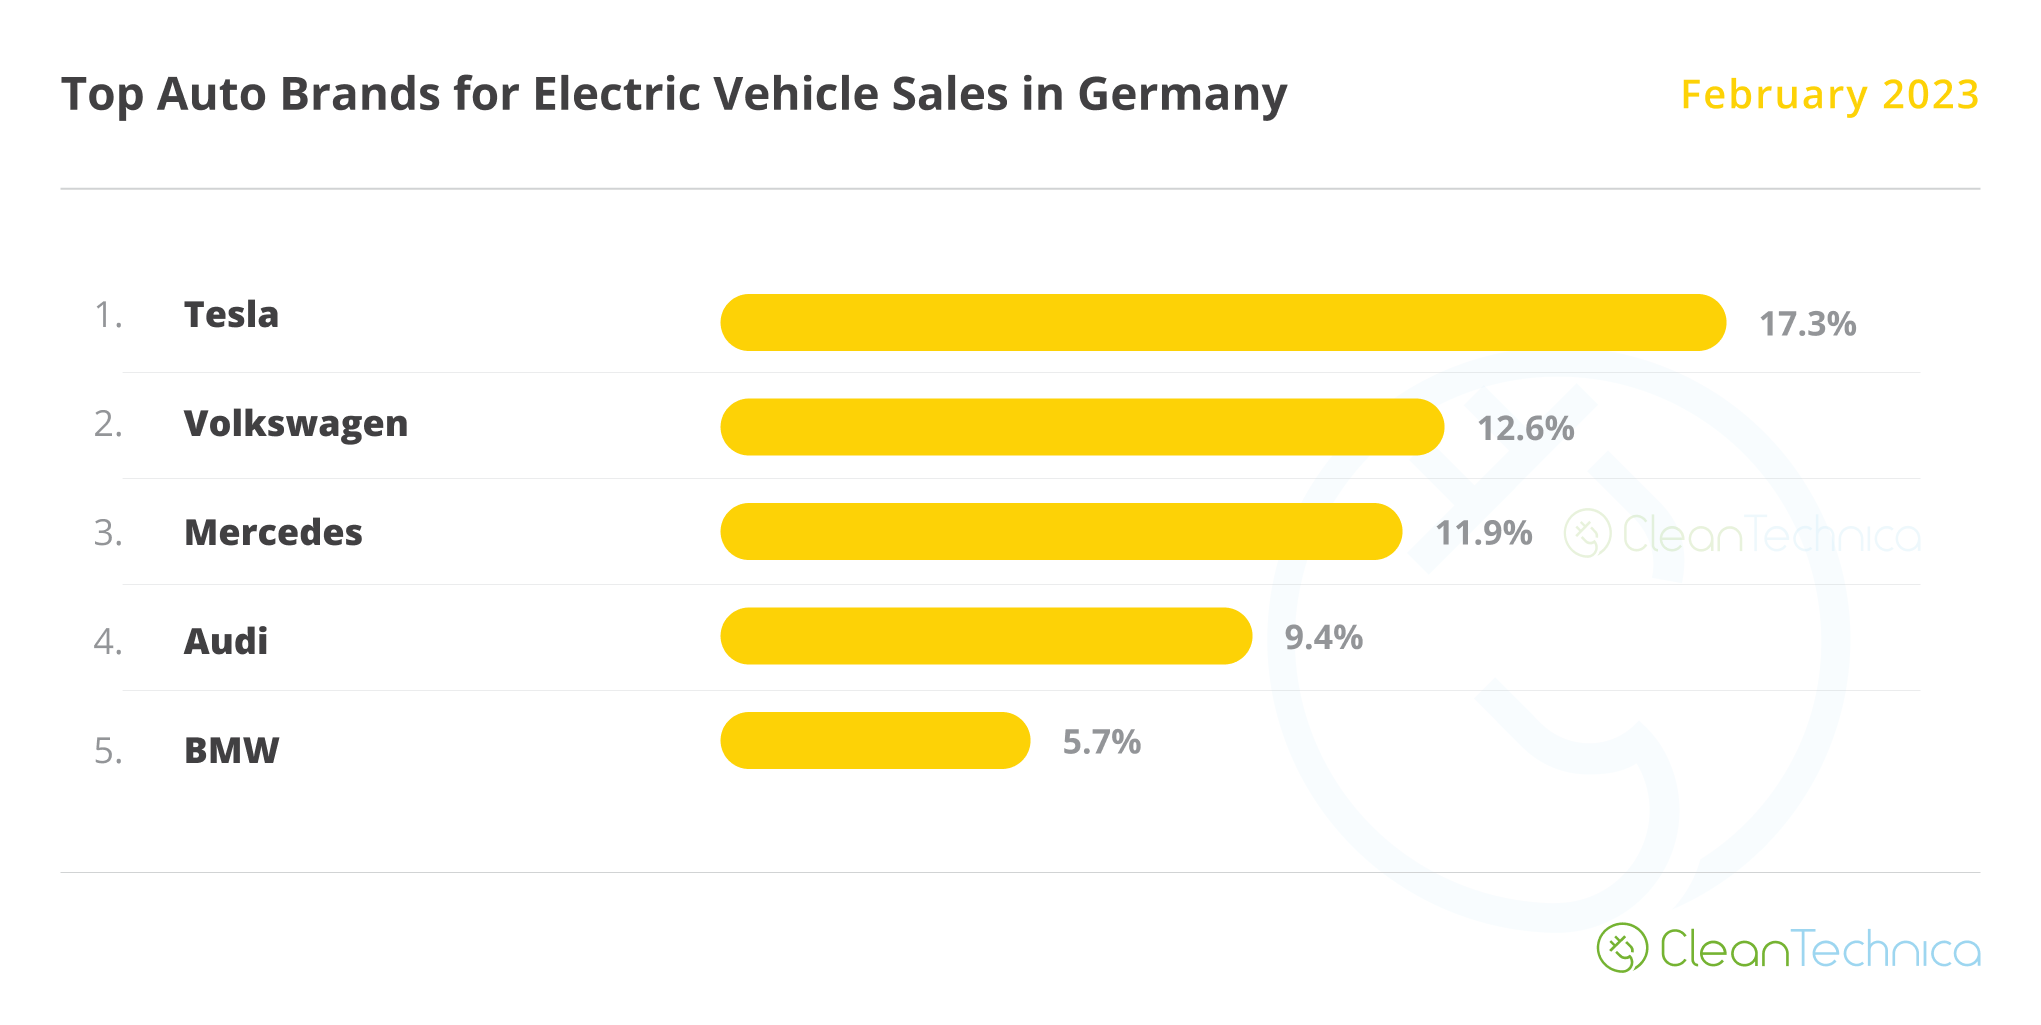 ऑटो ब्रांड जर्मनी में सबसे अधिक इलेक्ट्रिक वाहन बेच रहे हैं